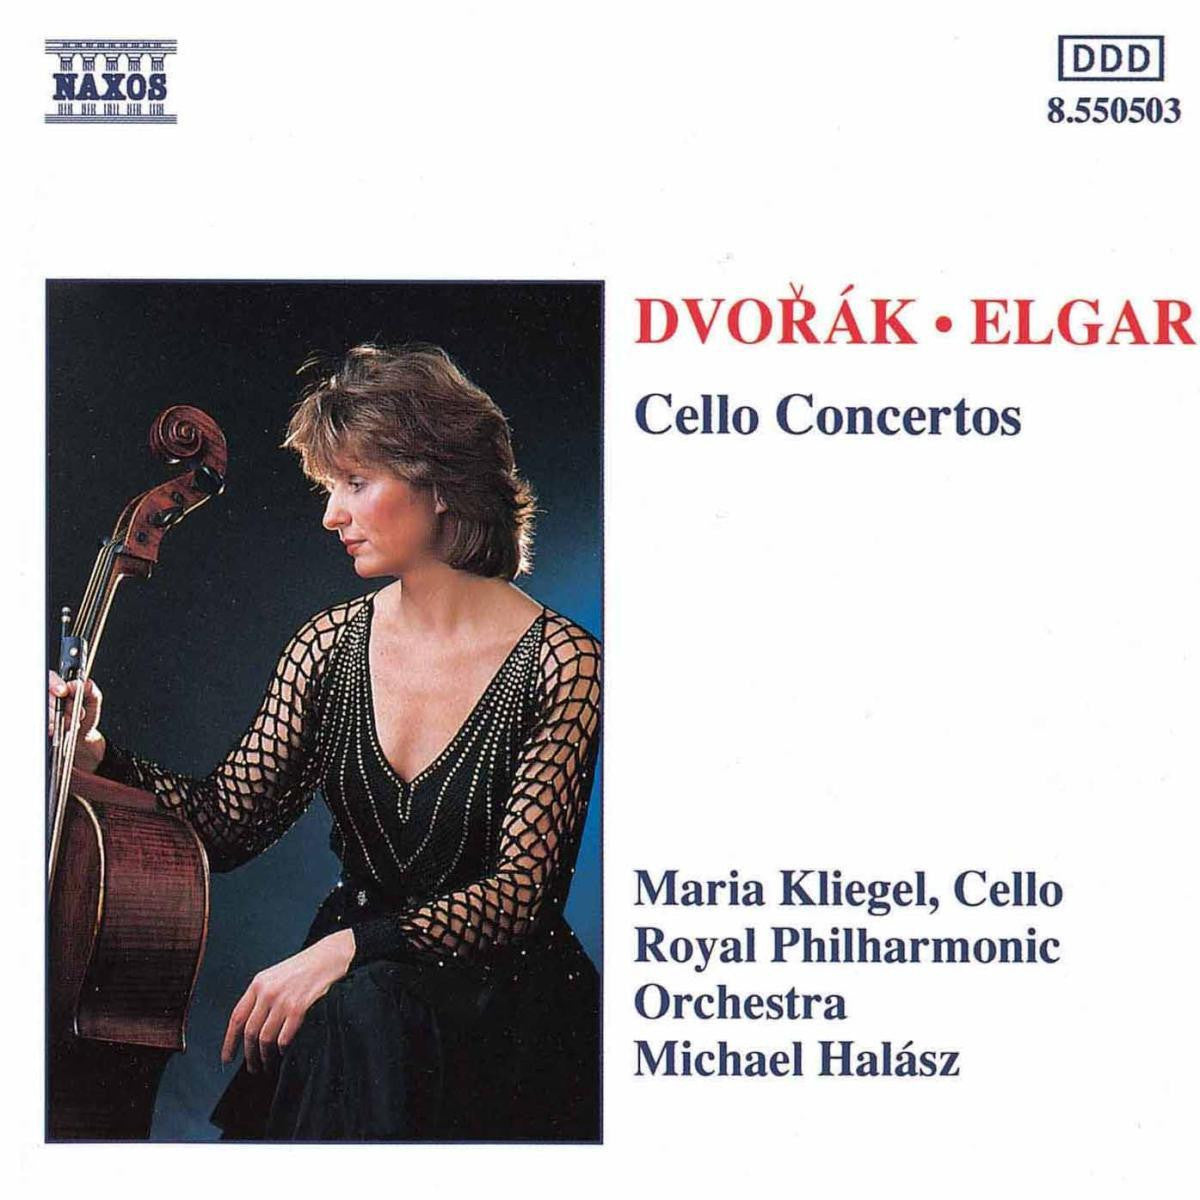 DVORAK + ELGAR-CELLO CONCERTOS CD G